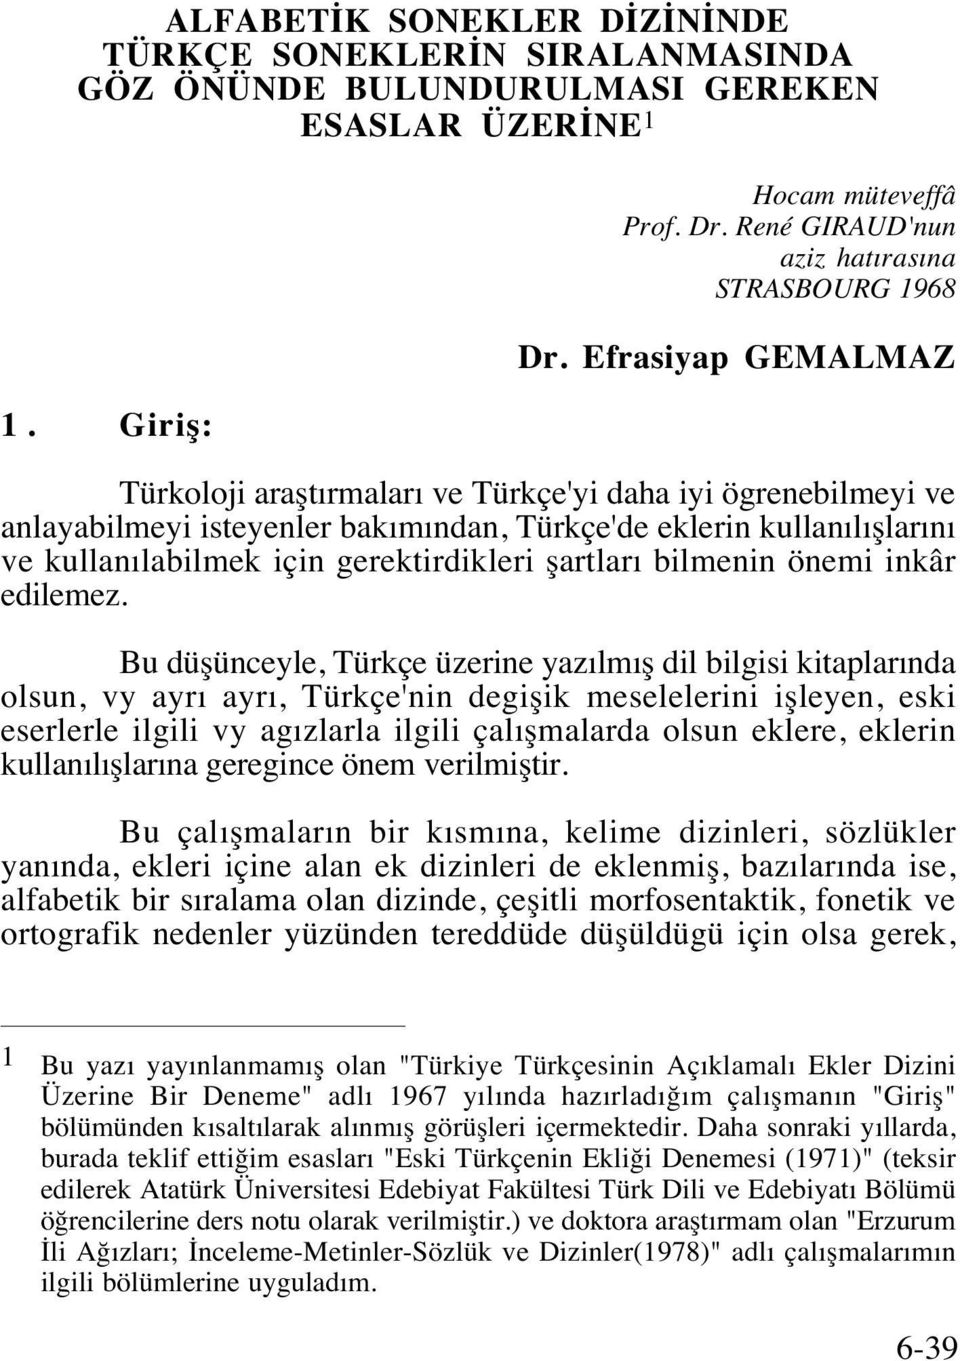 Efrasiyap GEMALMAZ Türkoloji araştırmaları ve Türkçe'yi daha iyi ögrenebilmeyi ve anlayabilmeyi isteyenler bakımından, Türkçe'de eklerin kullanılışlarını ve kullanılabilmek için gerektirdikleri